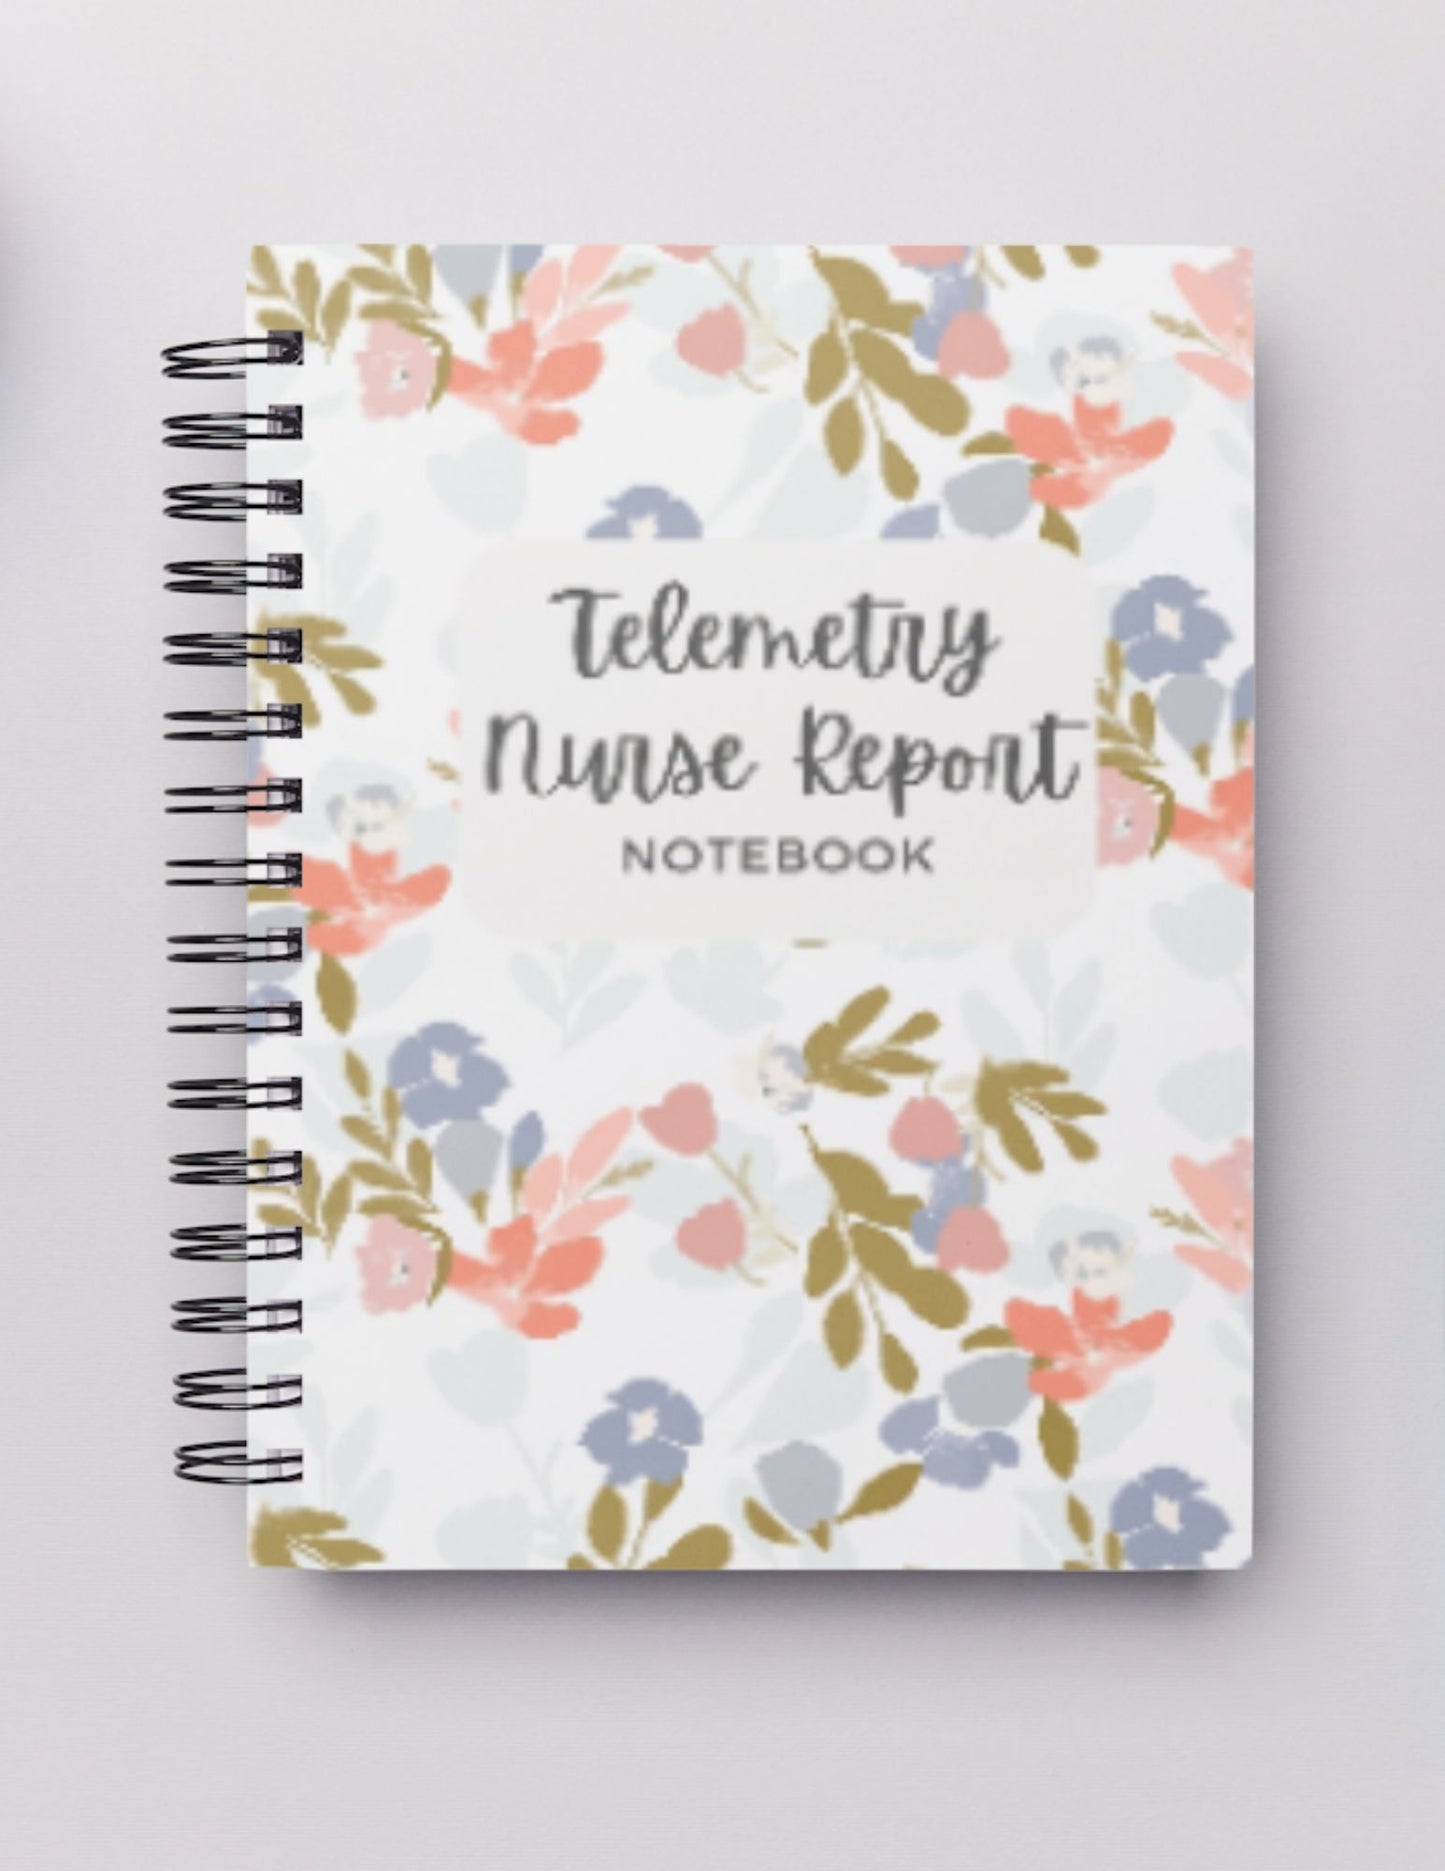 Telemetry (1 patient) Nurse Report Notebook